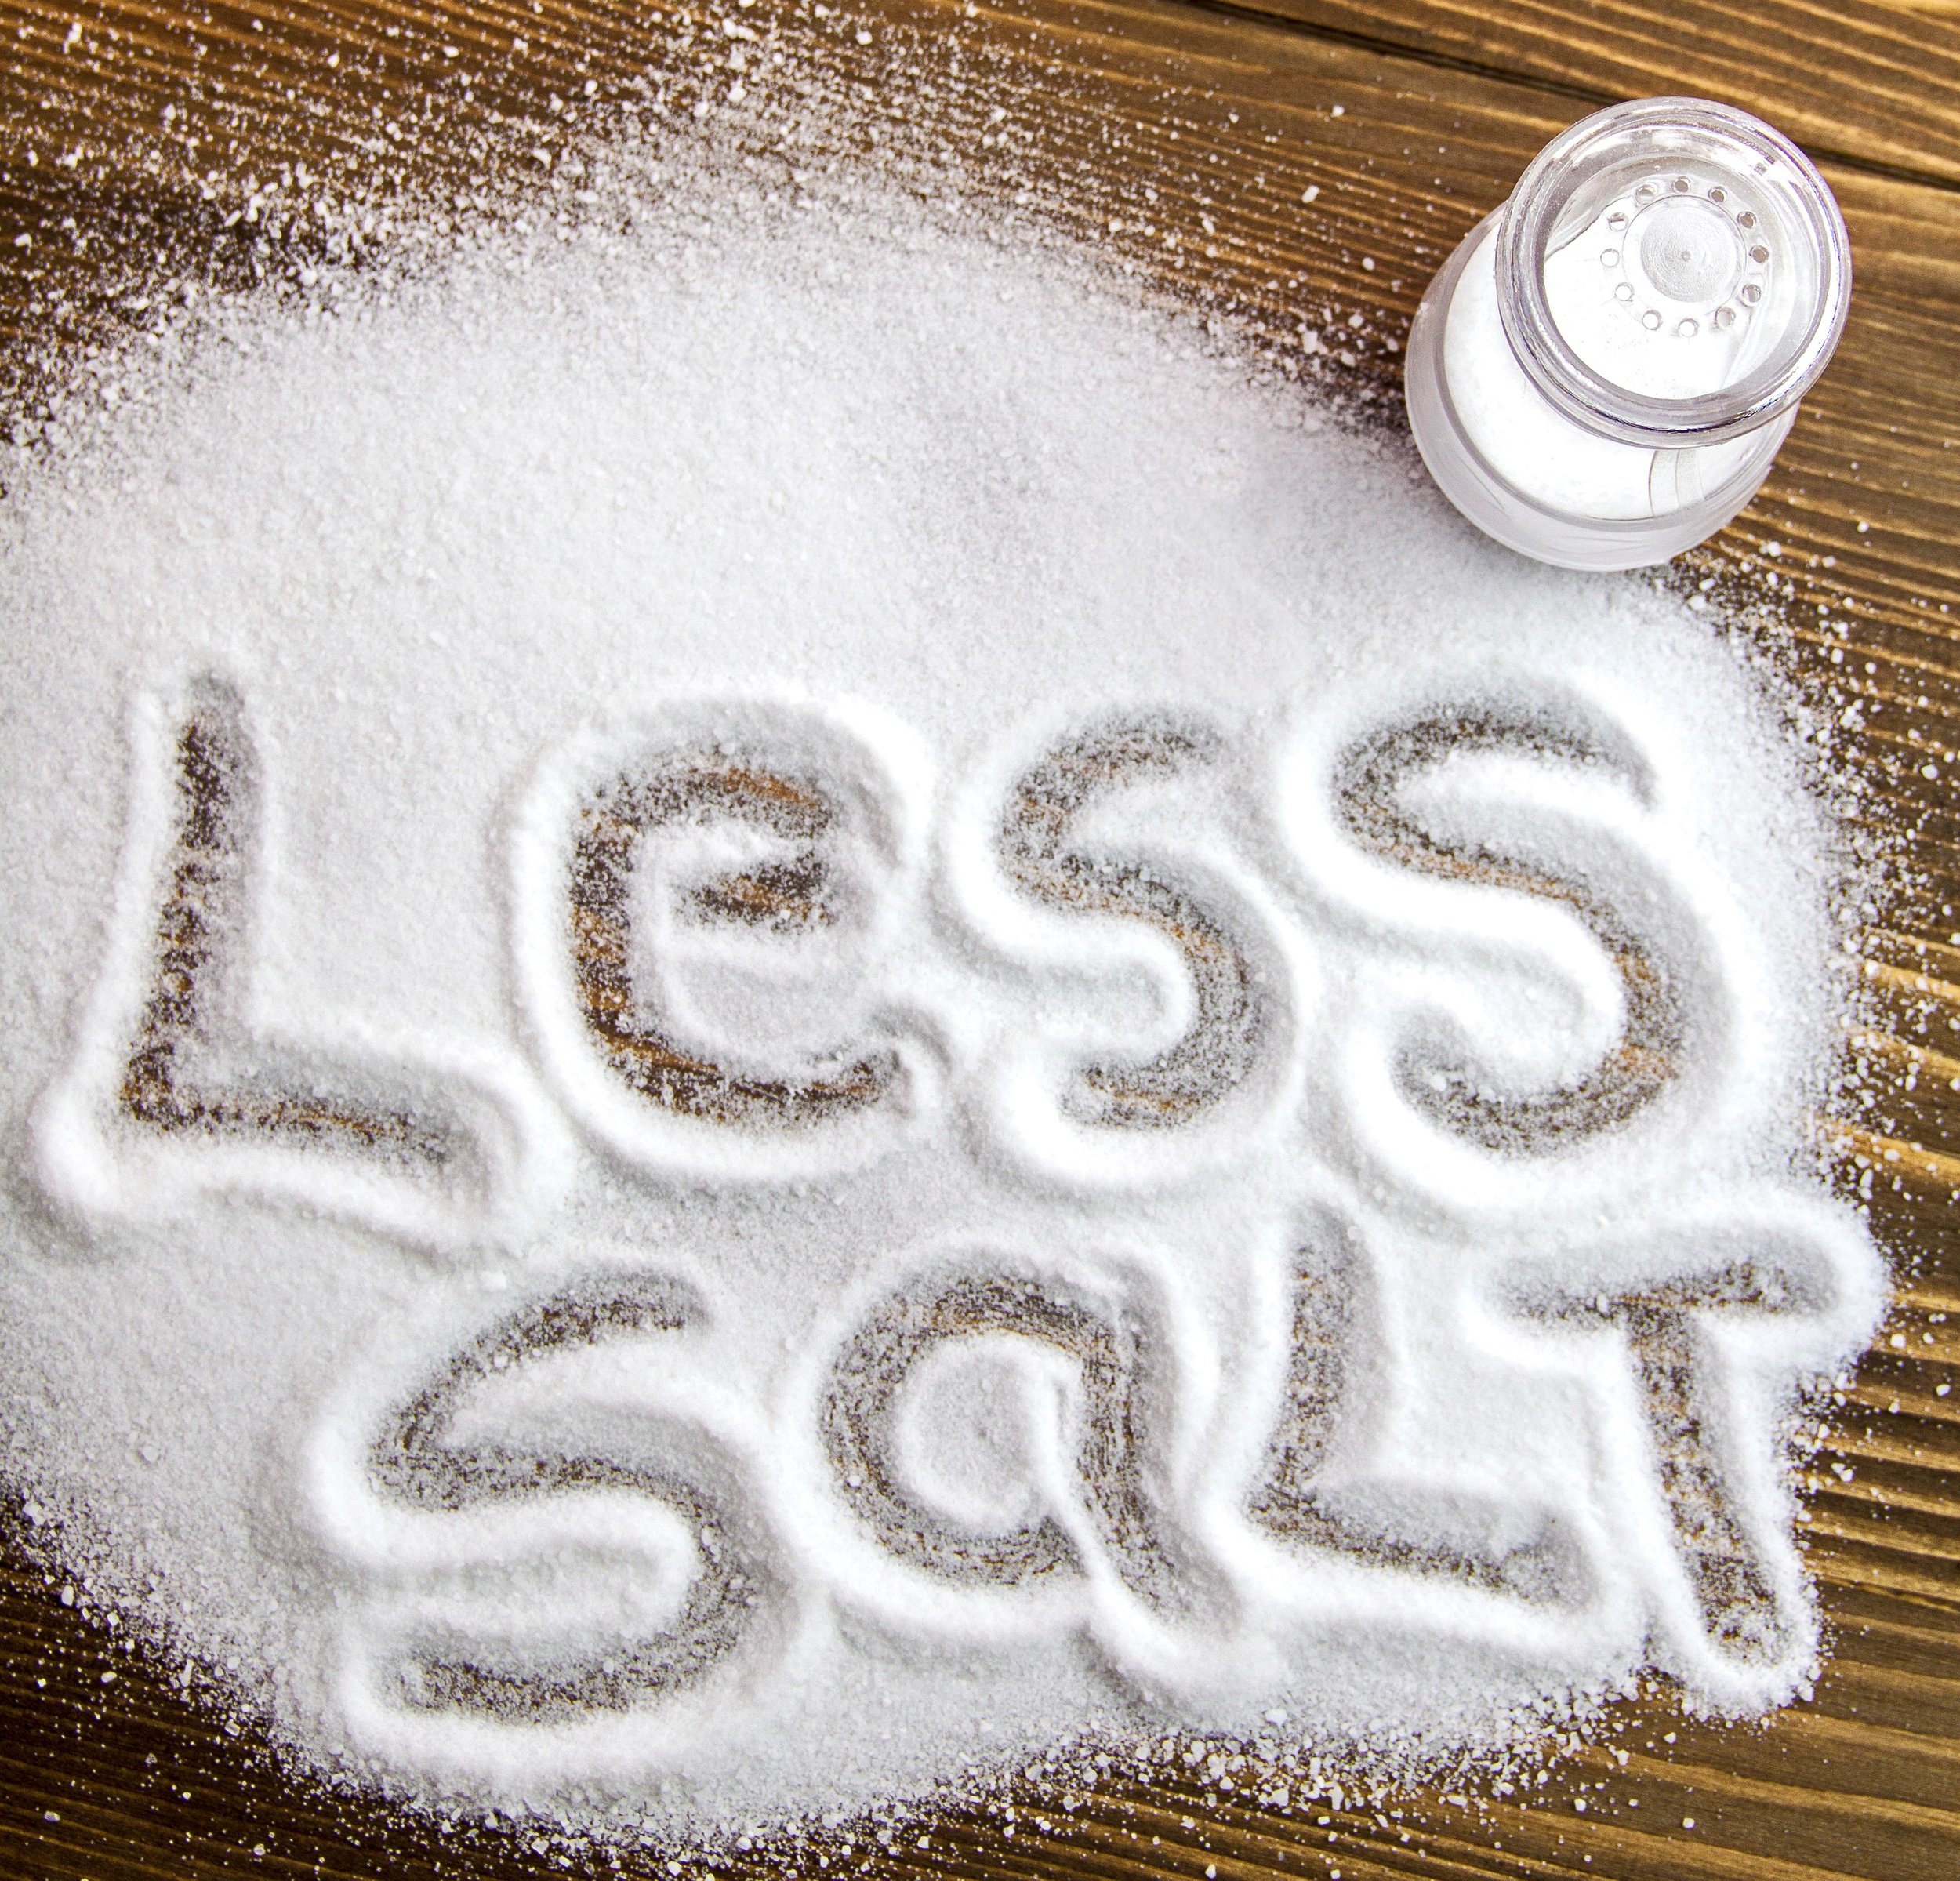 "War on salt"